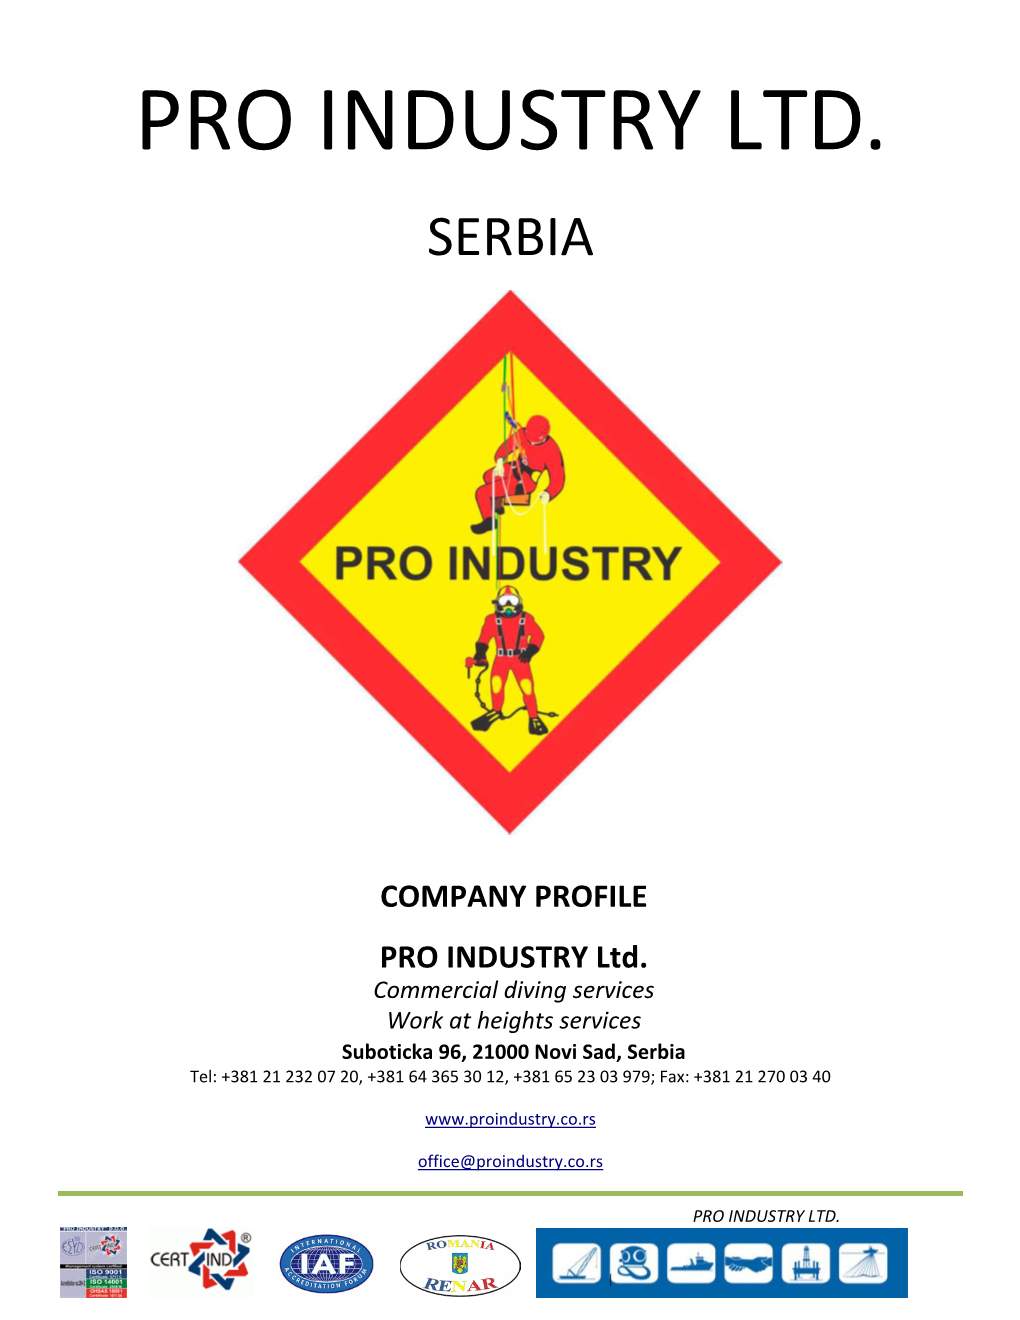 Pro Industry Ltd. Serbia